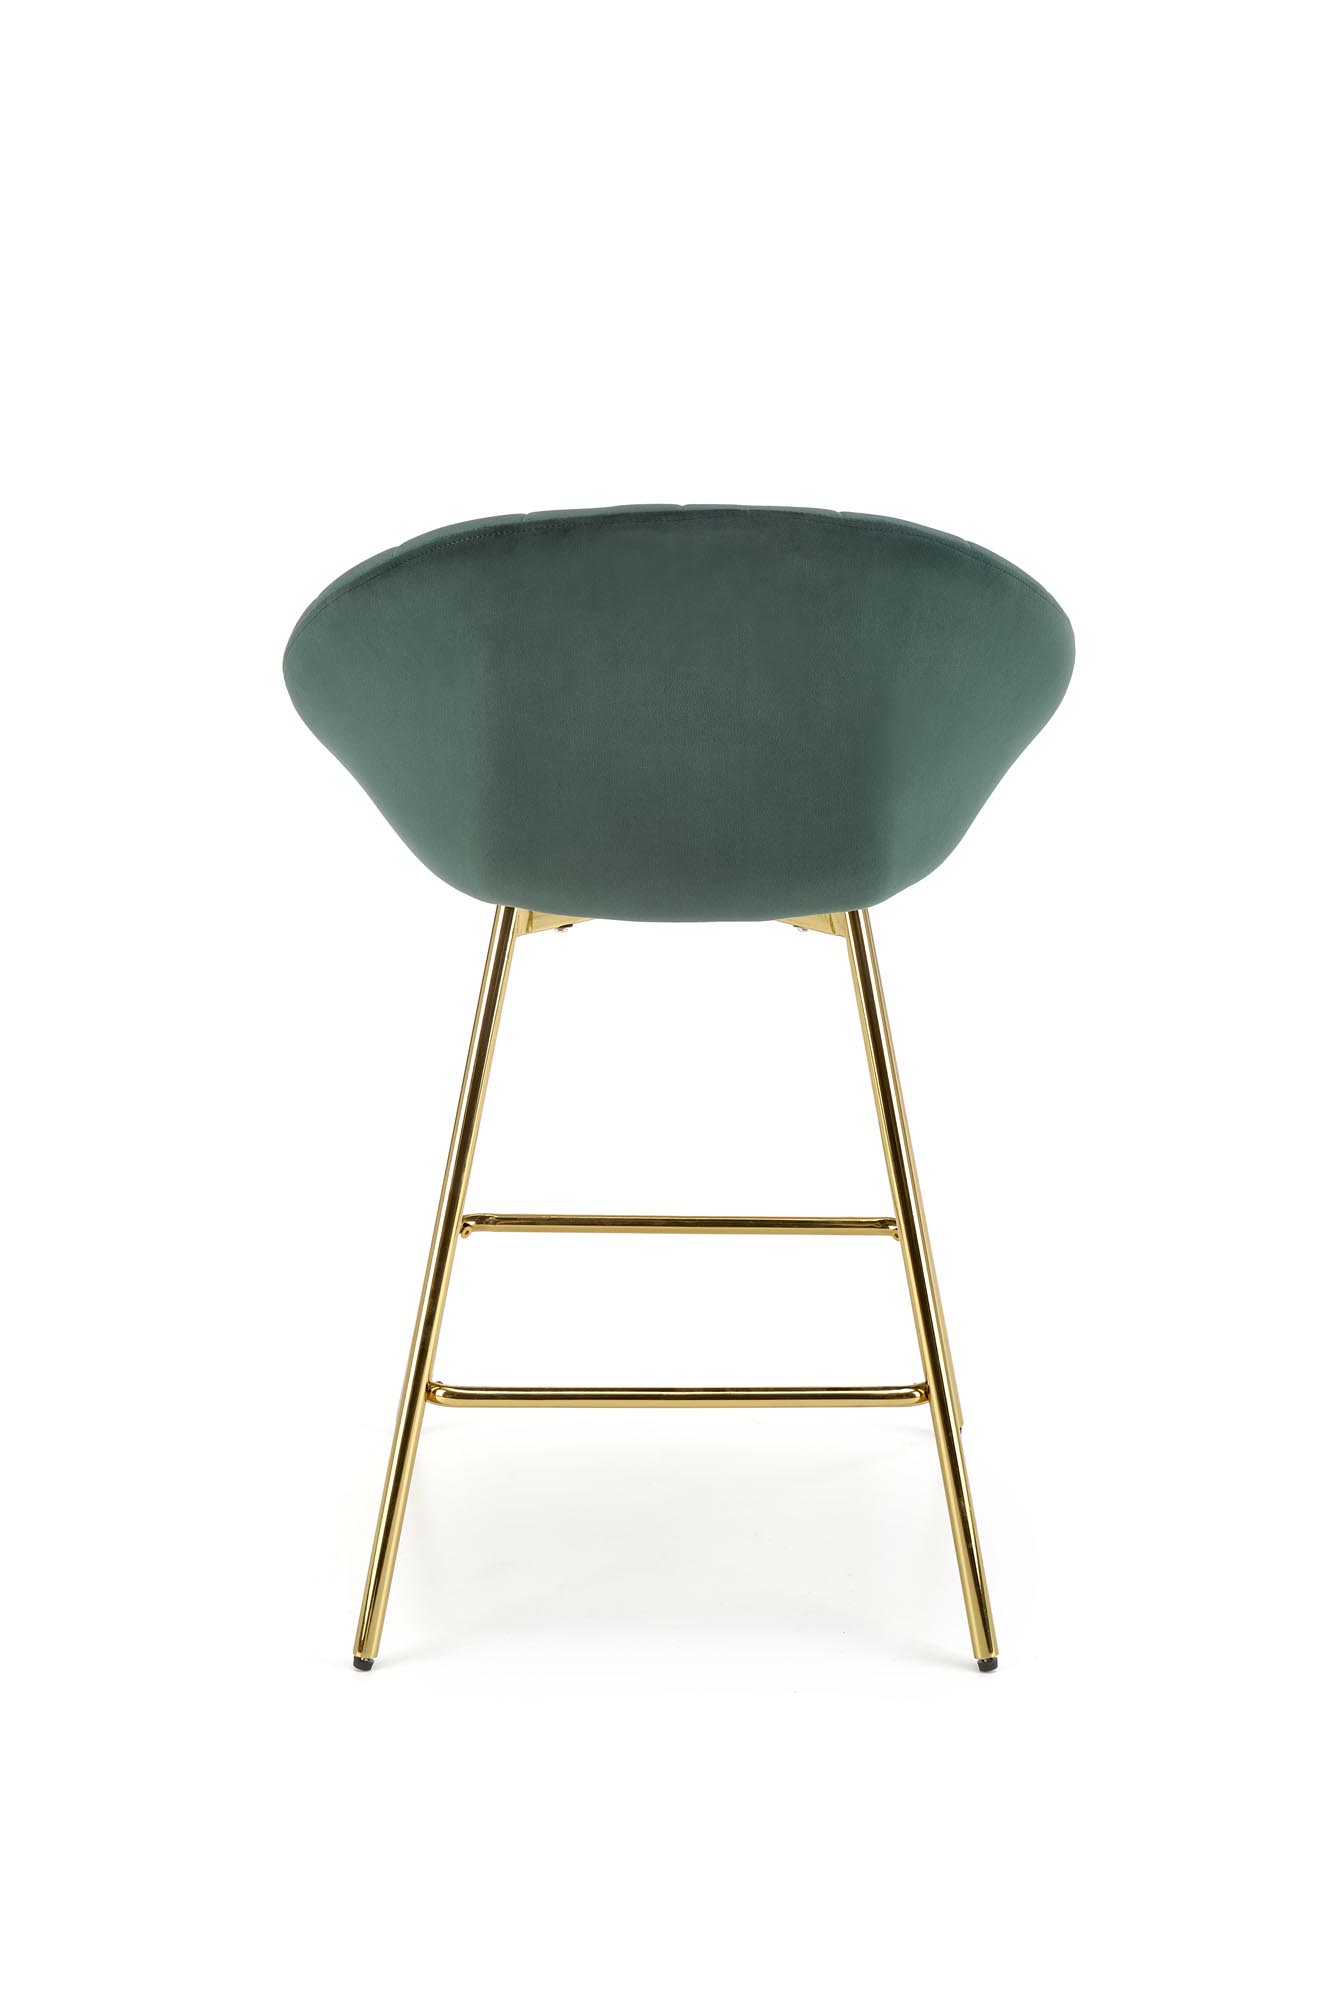 H112 Barová židle tmavý Zelený / Žlutý Barová židle čalouněná h112 - tmavá Zeleň / Podstavec